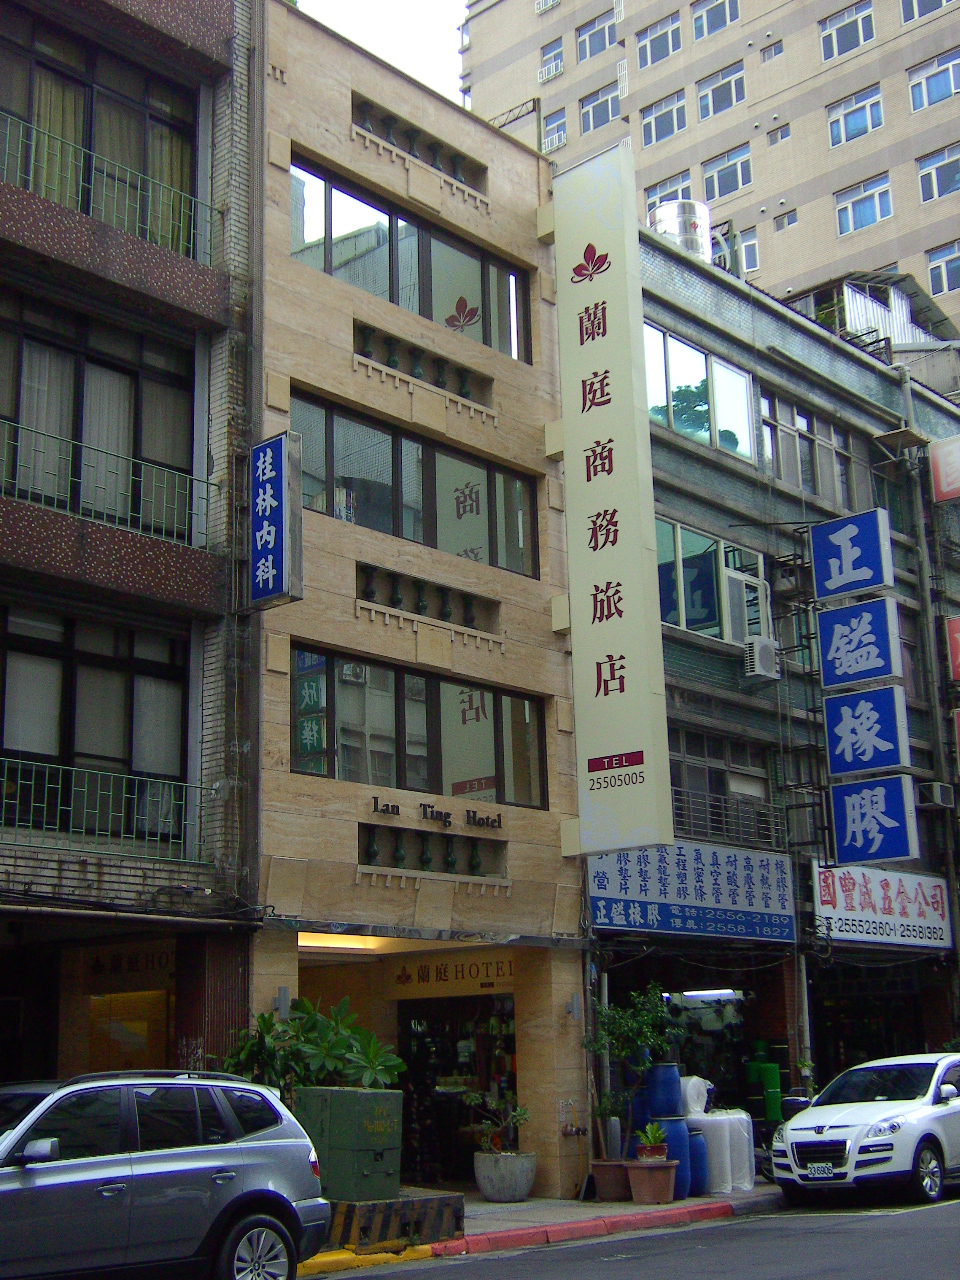 Lan Ting Business Inn